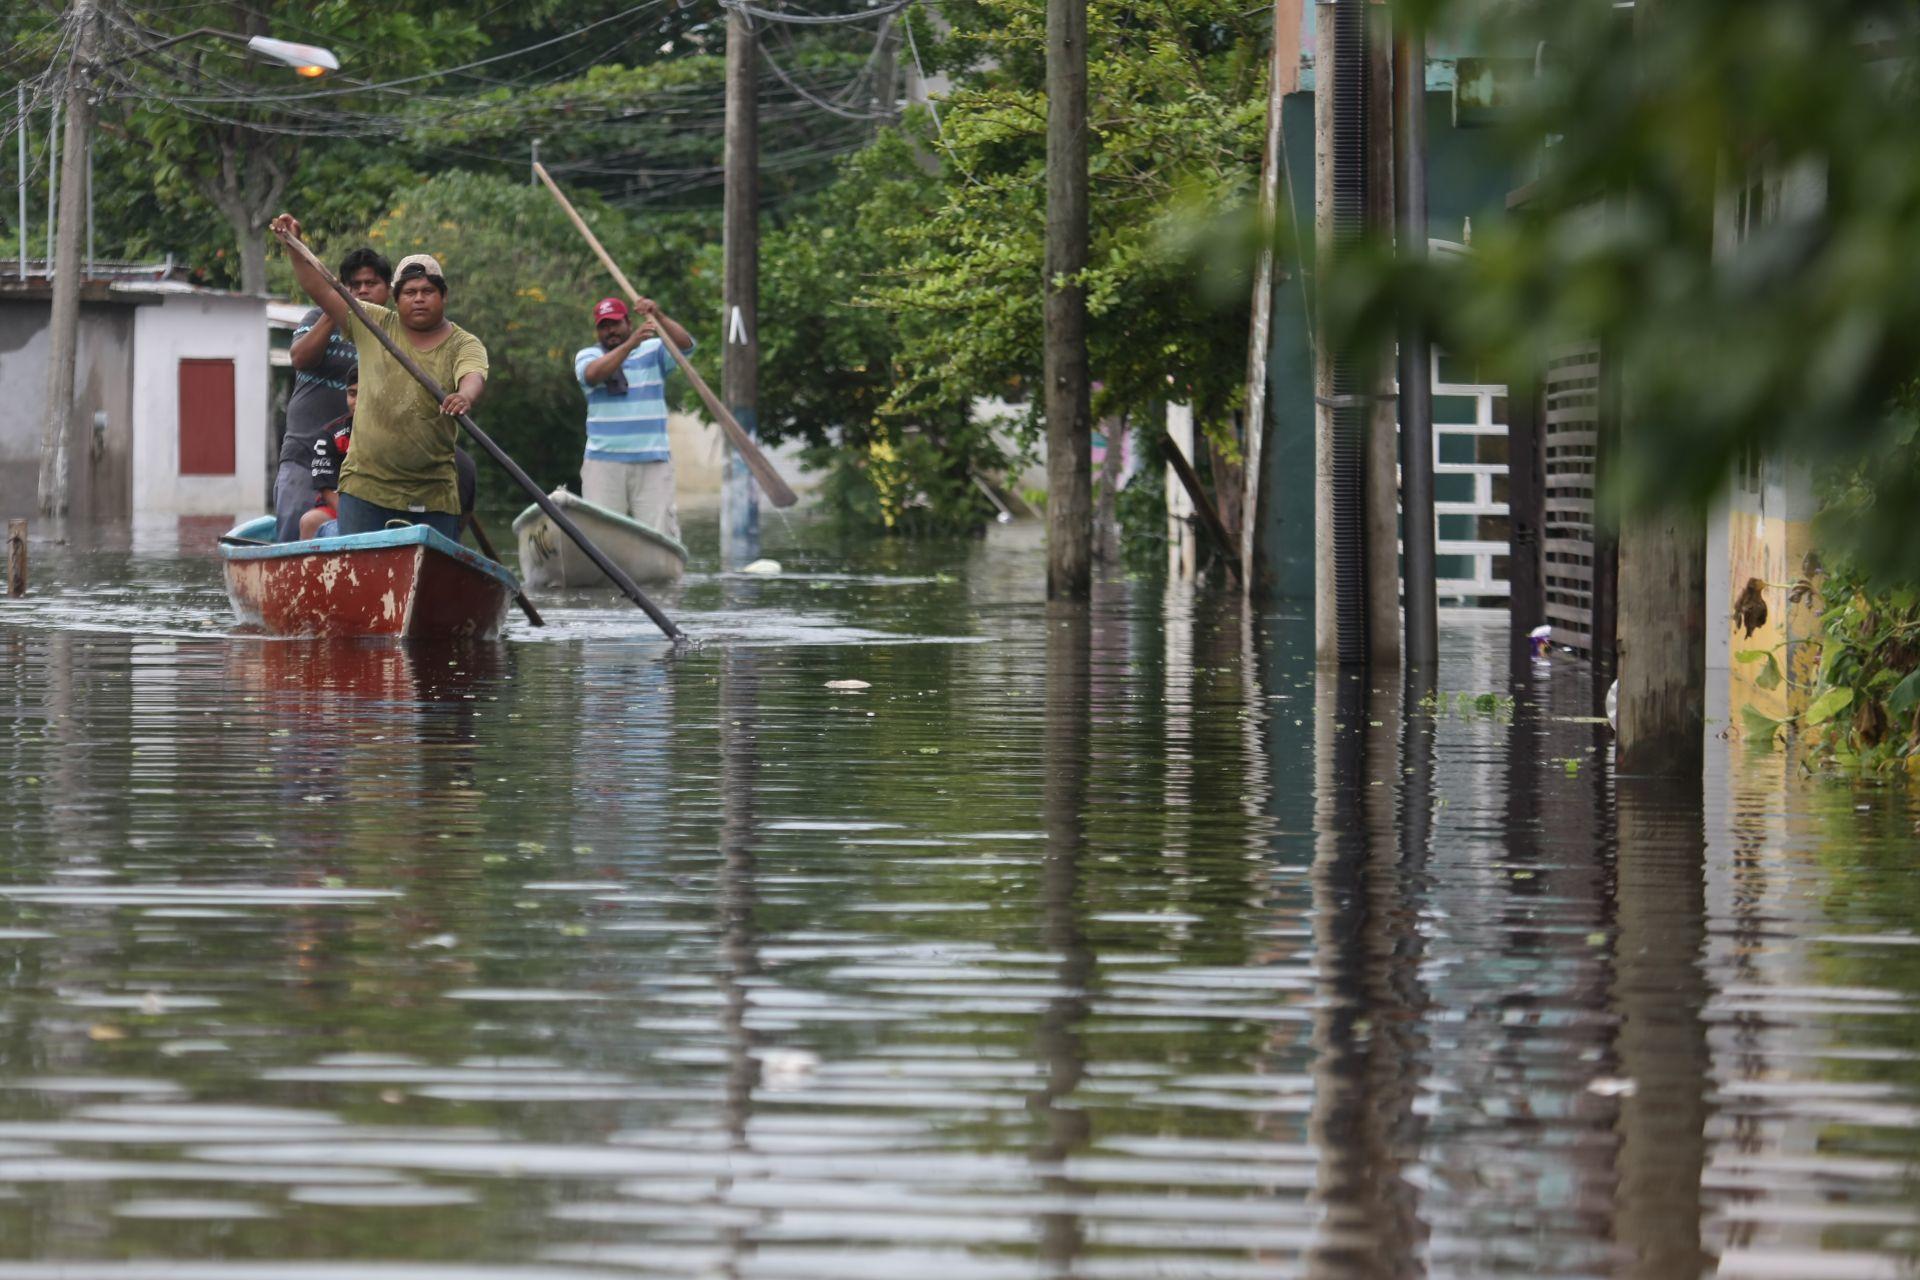 Se espera disminución en las lluvias en Tabasco, continúa la alerta